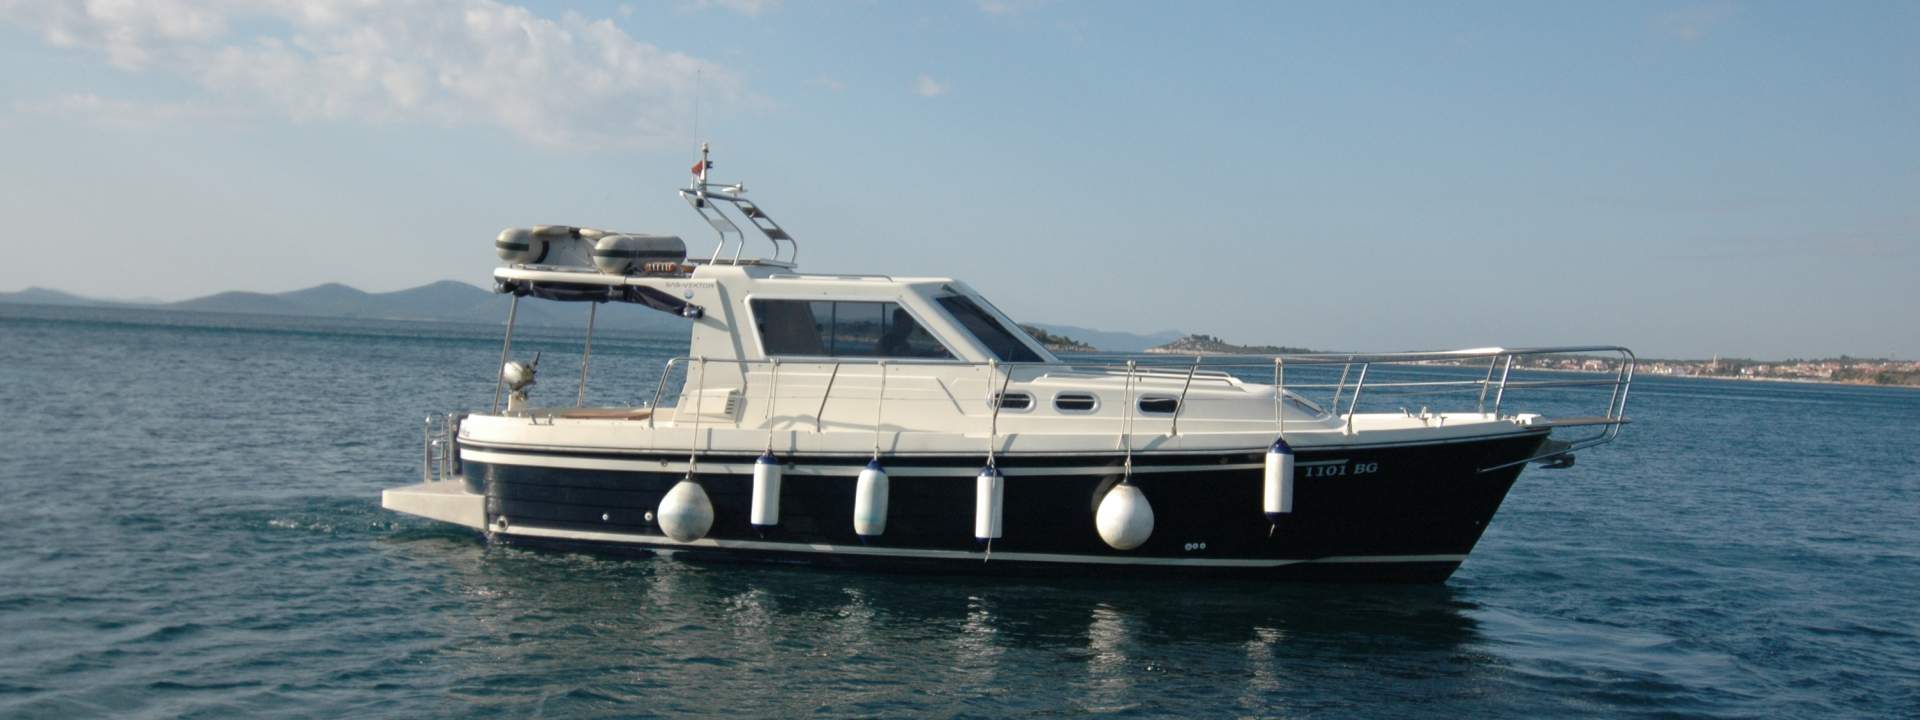 Barca a motore SAS Adria 1002